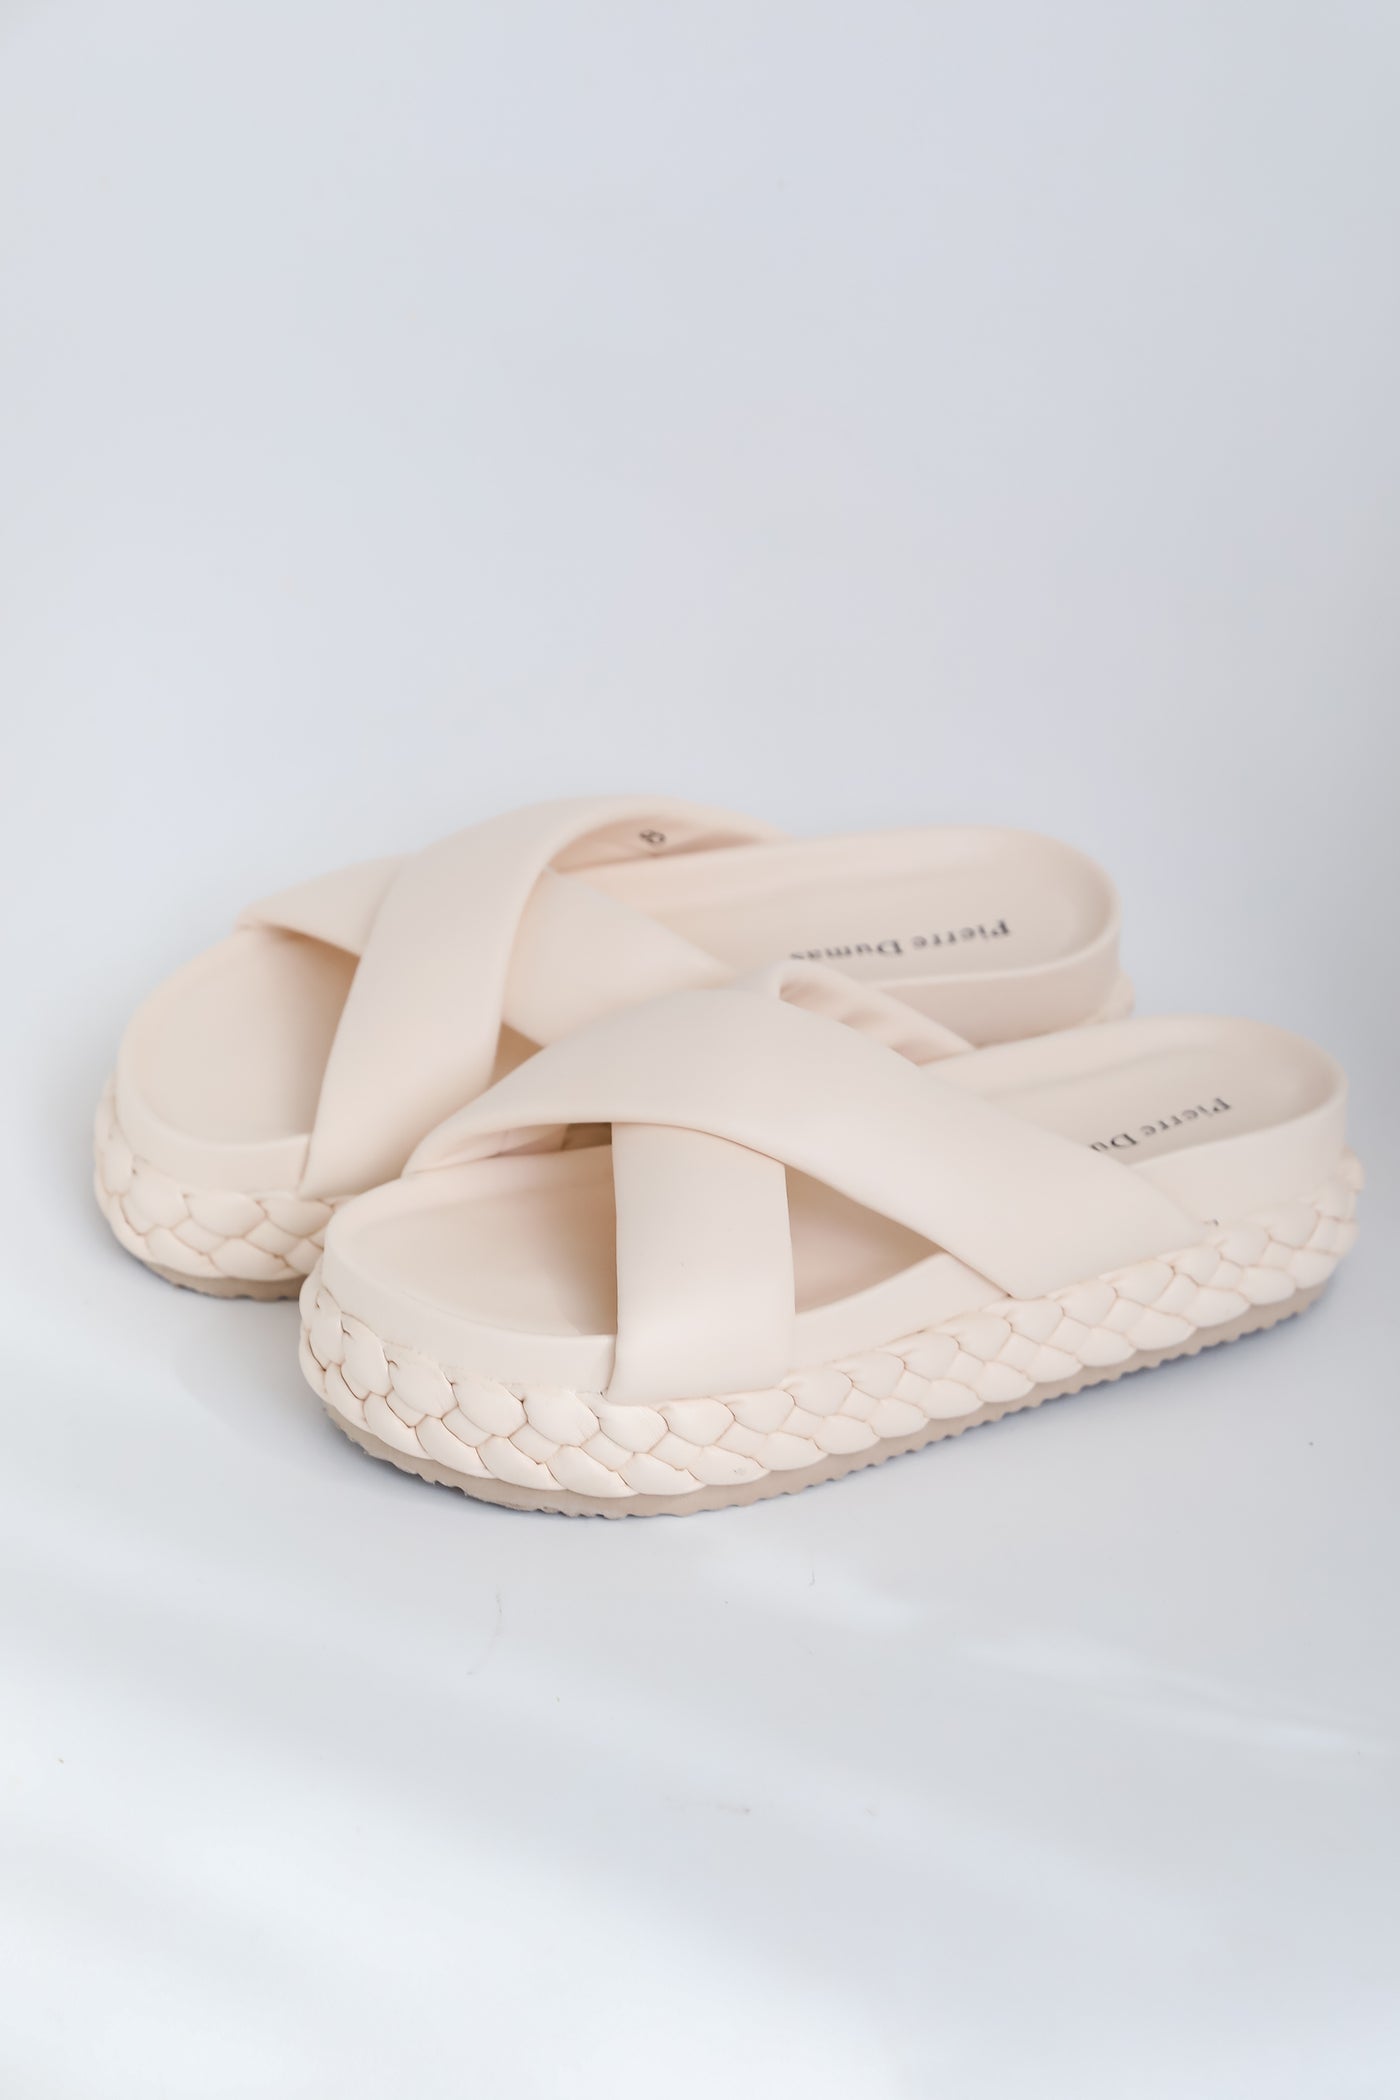 comfy Nude Platform Slide Sandals